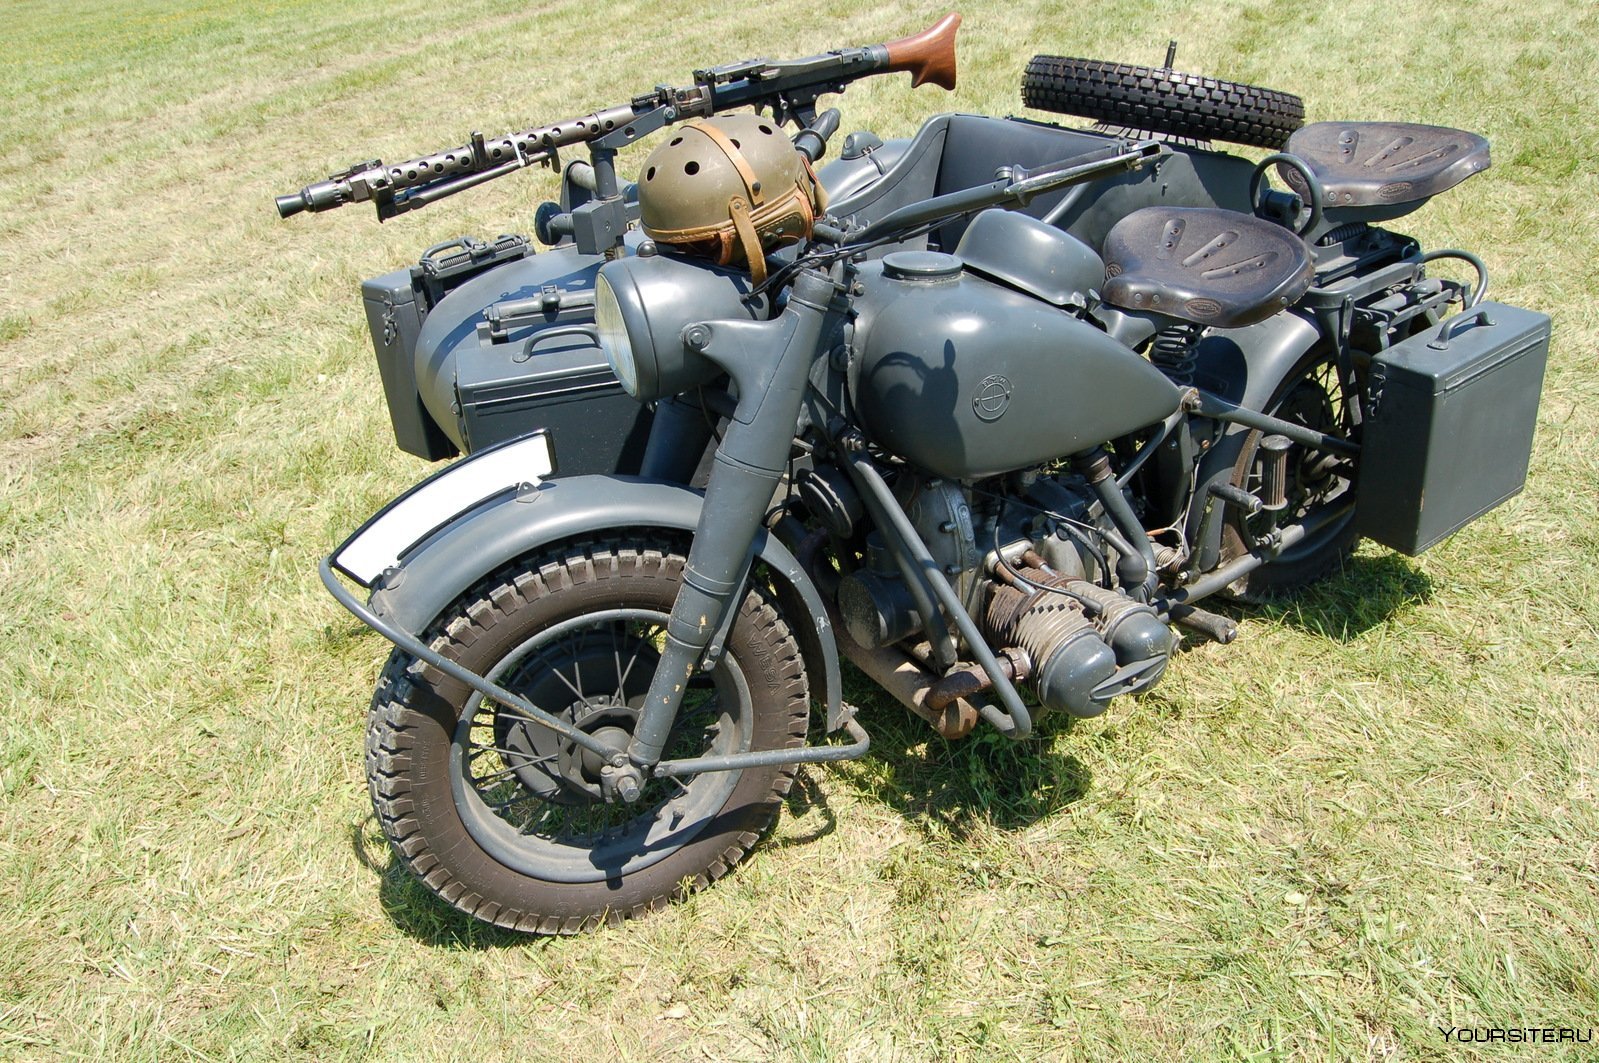 Мотоцикл БМВ второй мировой